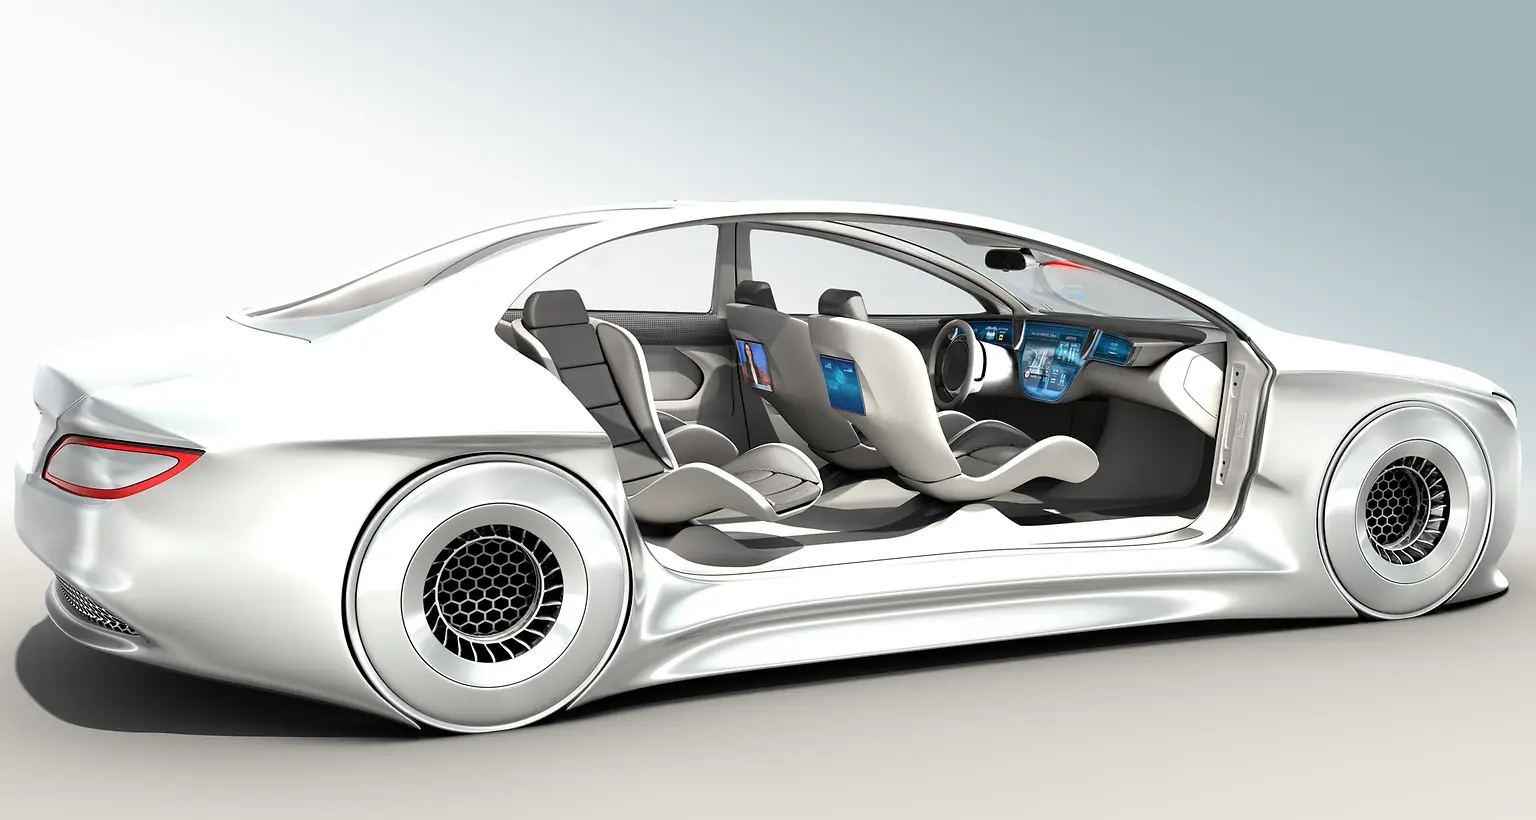 
Die neue Formulierung ermöglicht Designflexibilität und bietet hohe Zuverlässigkeit in der Automobilindustrie.